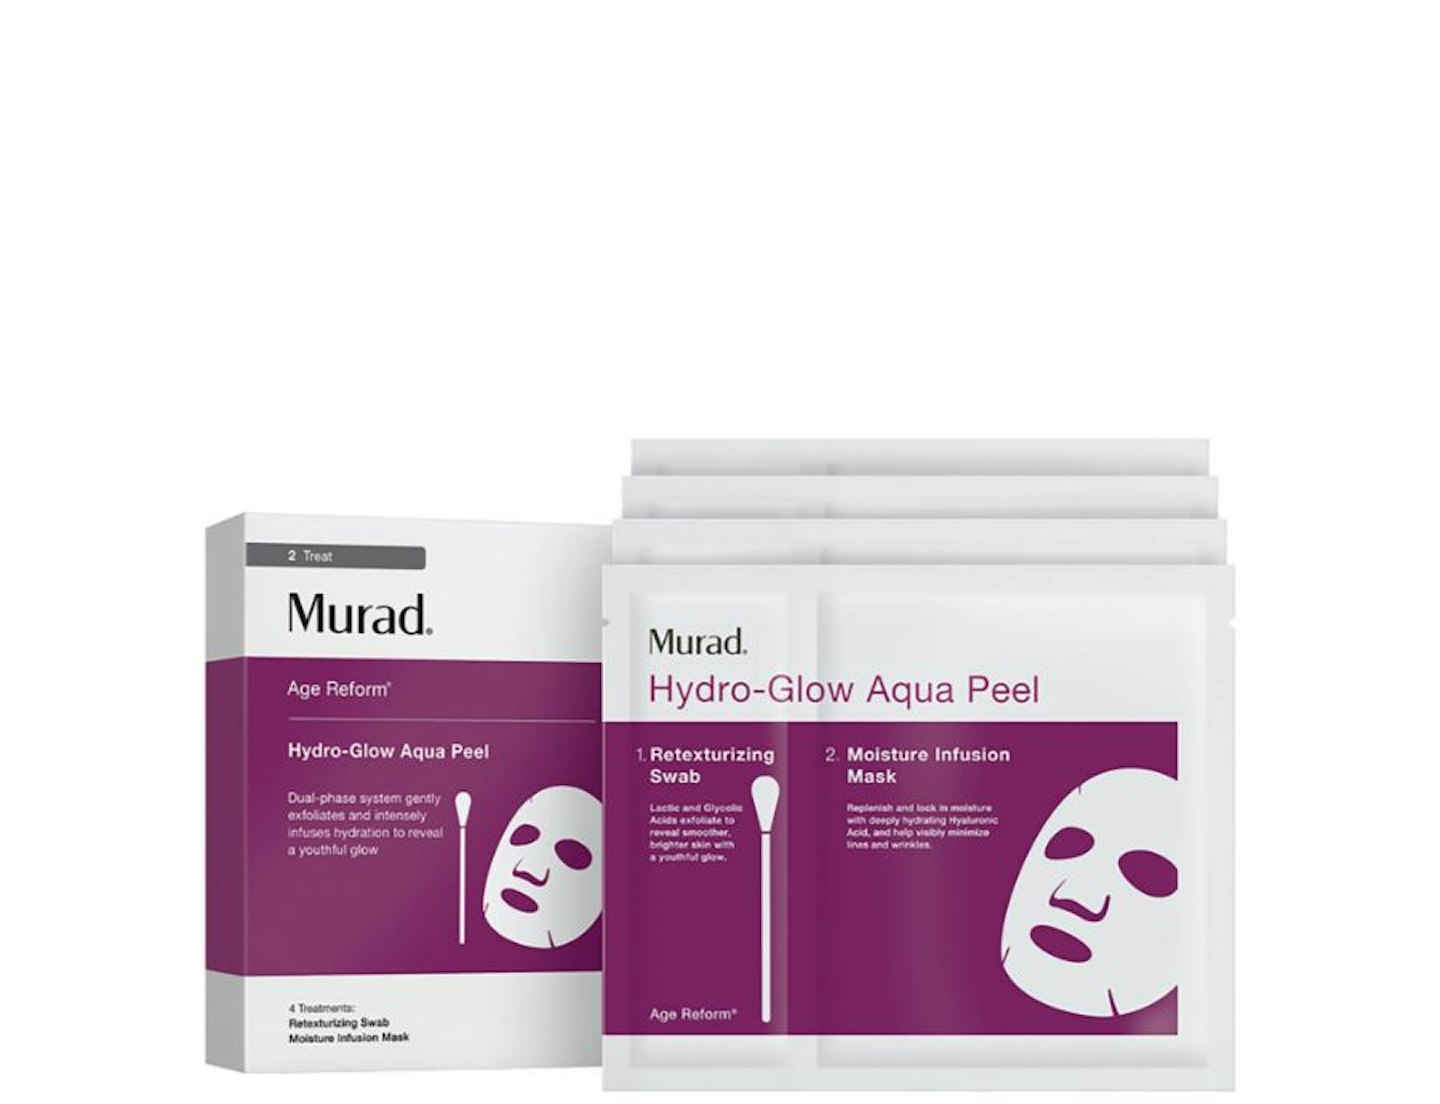 Murad Hydro-Glow Aqua Peel (4 pack), Lookfantastic.com, 40.00